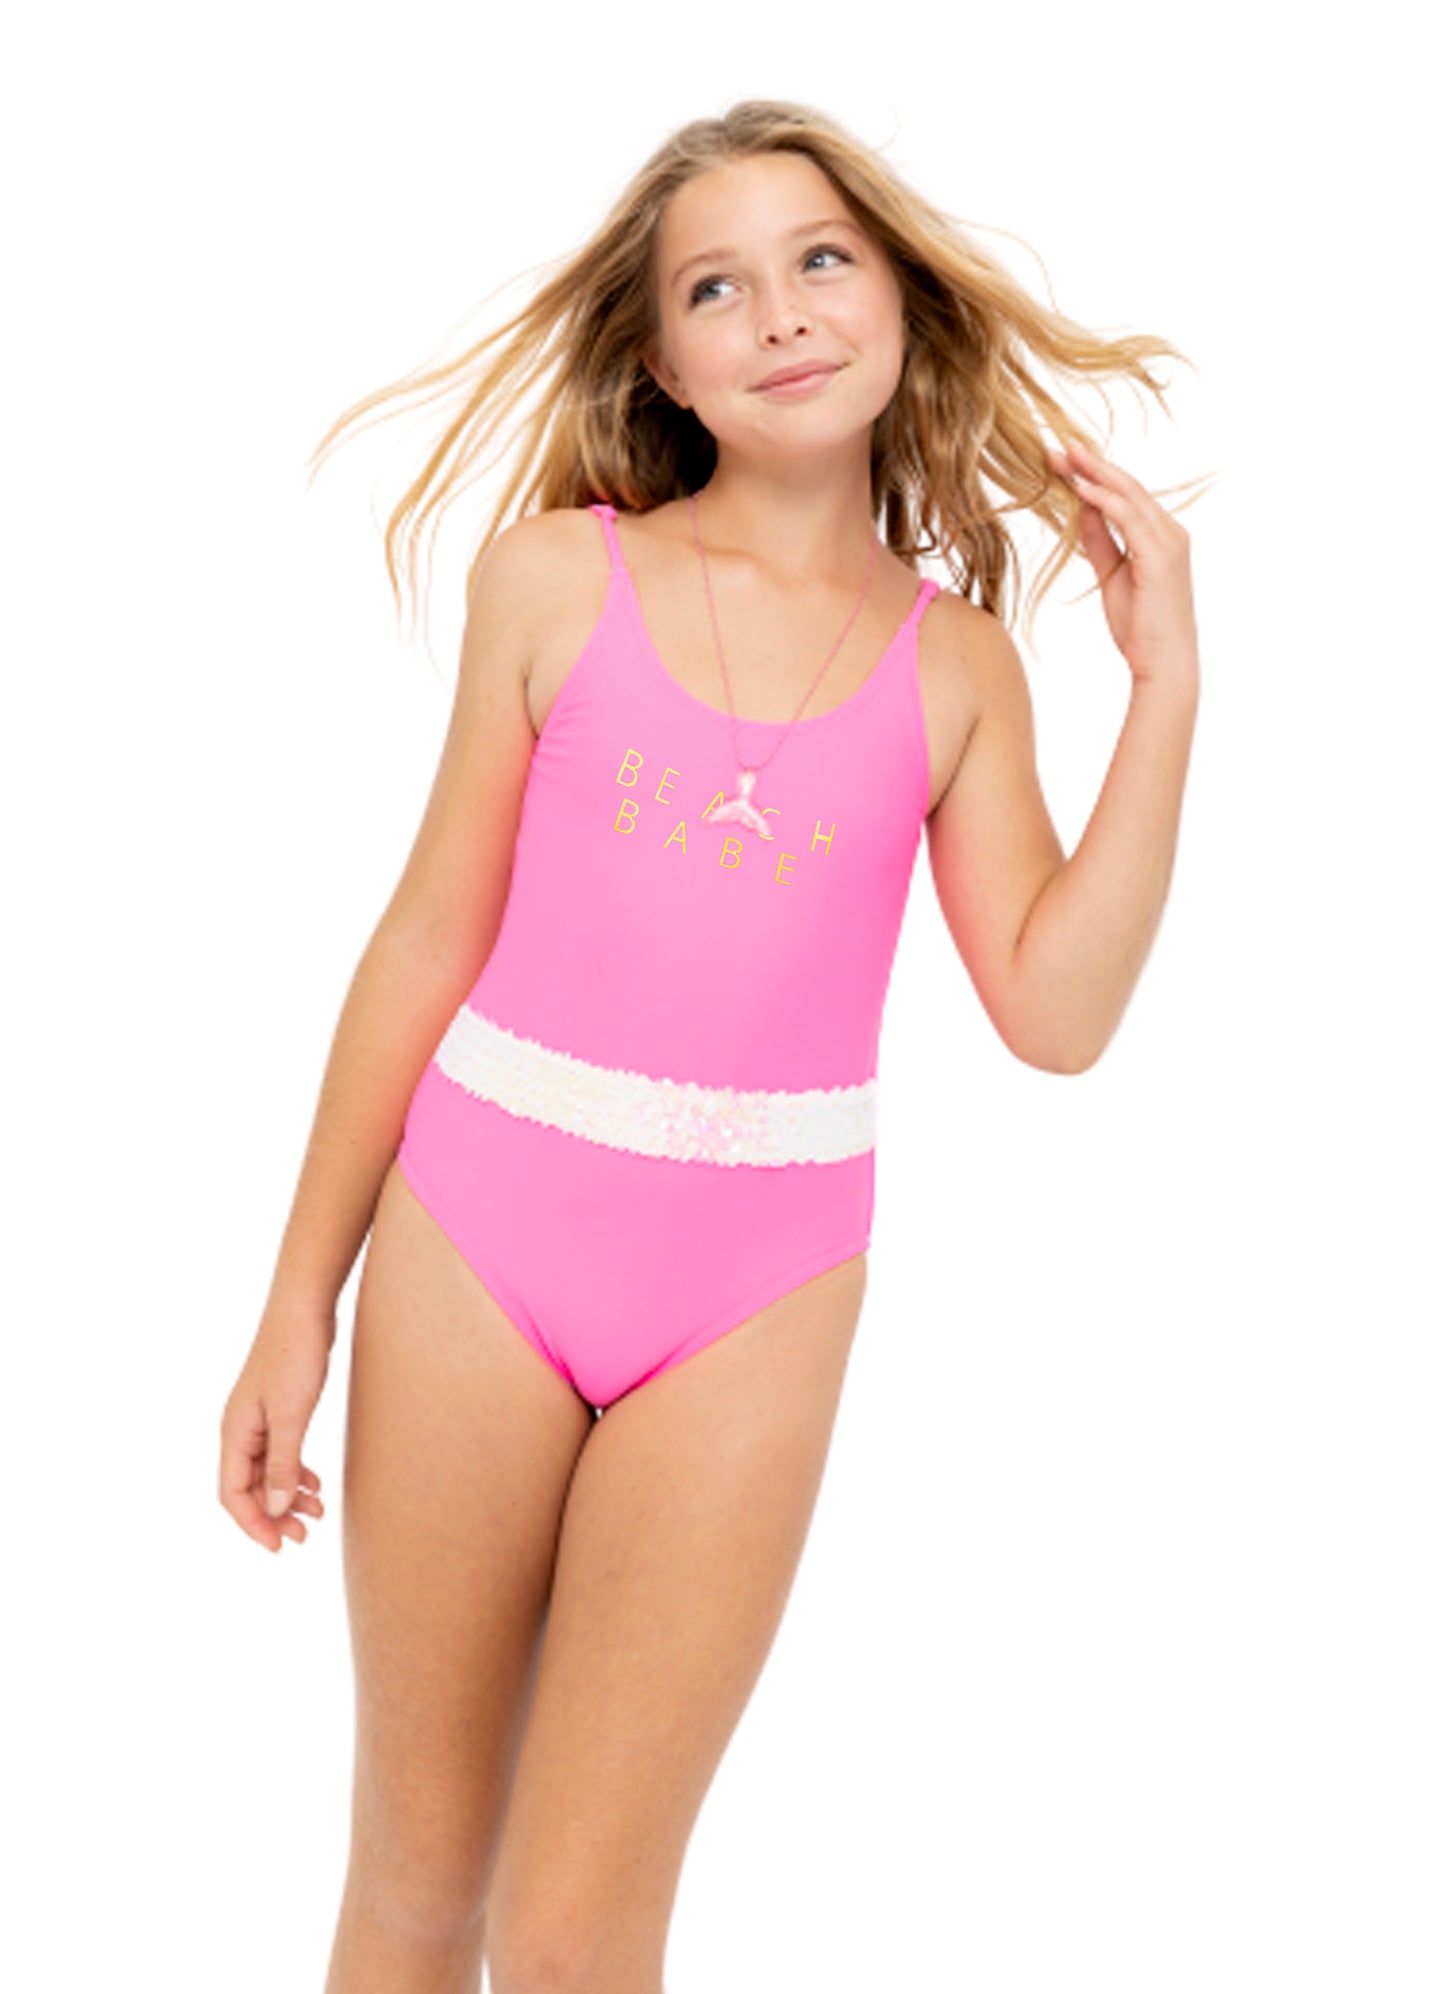 Beachwear for girls, cute swimsuits for girls